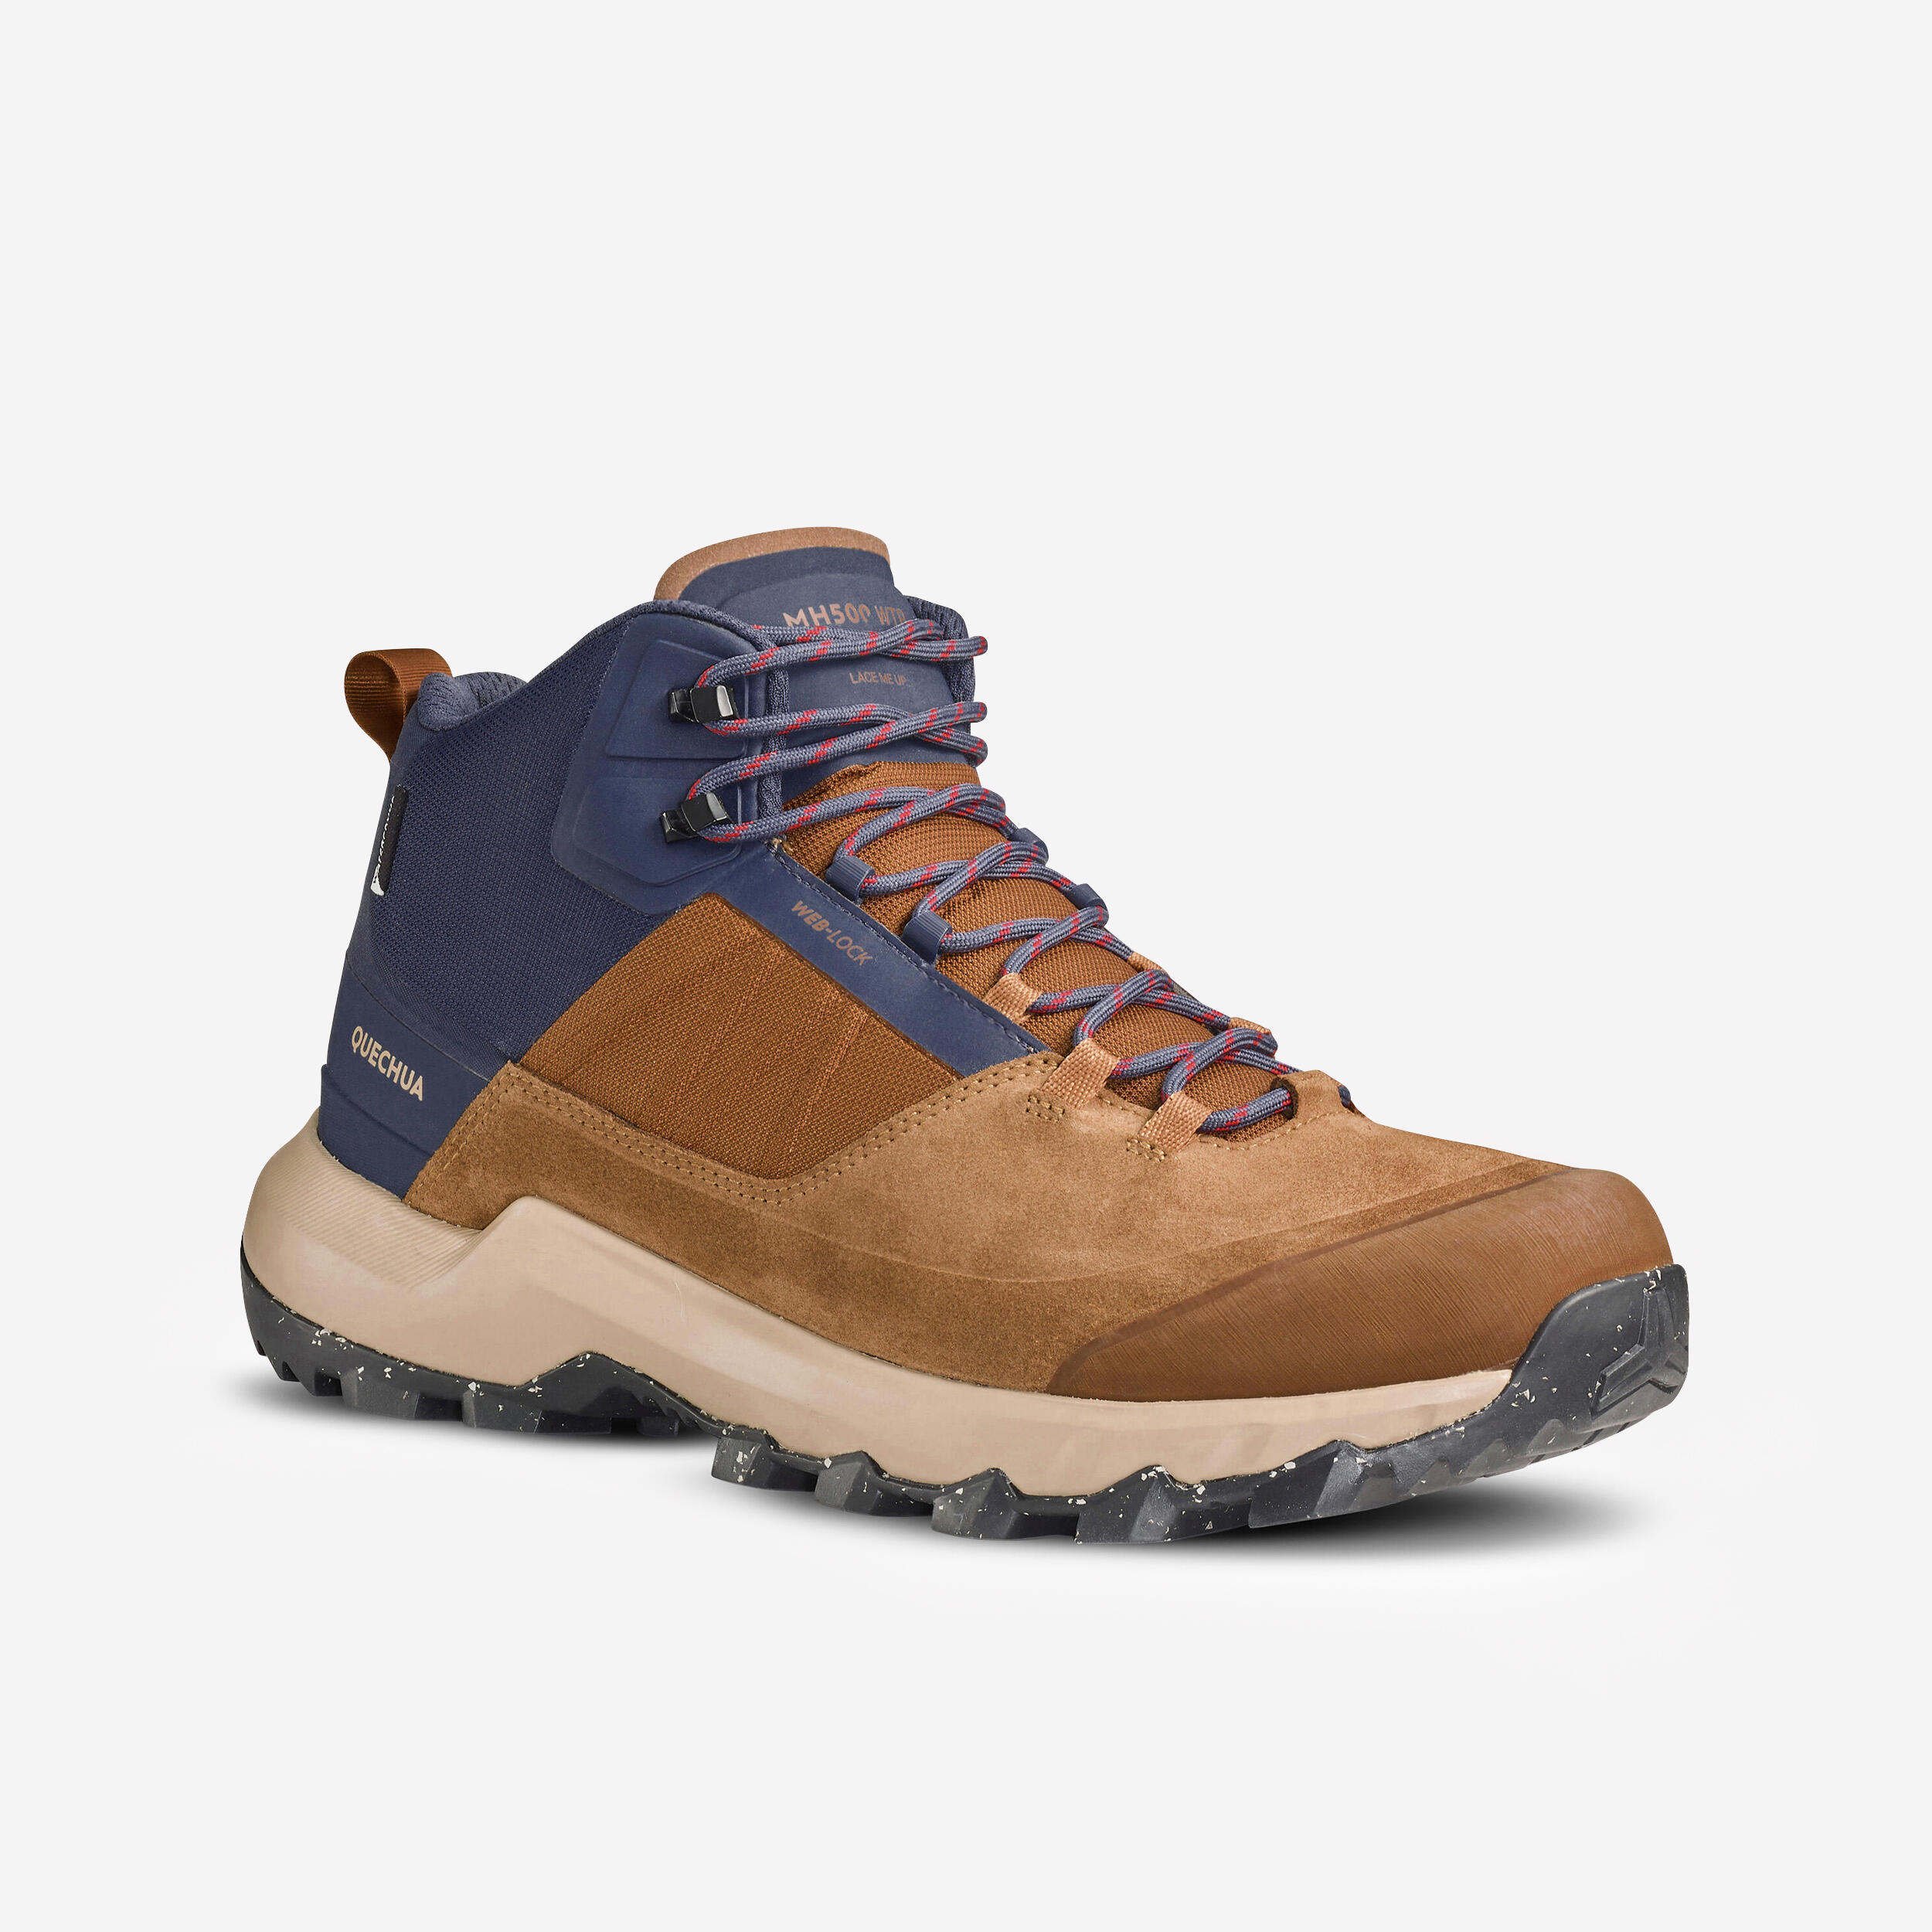 QUECHUA Men's Waterproof Mountain Walking Shoes - MH500 Mid Brown